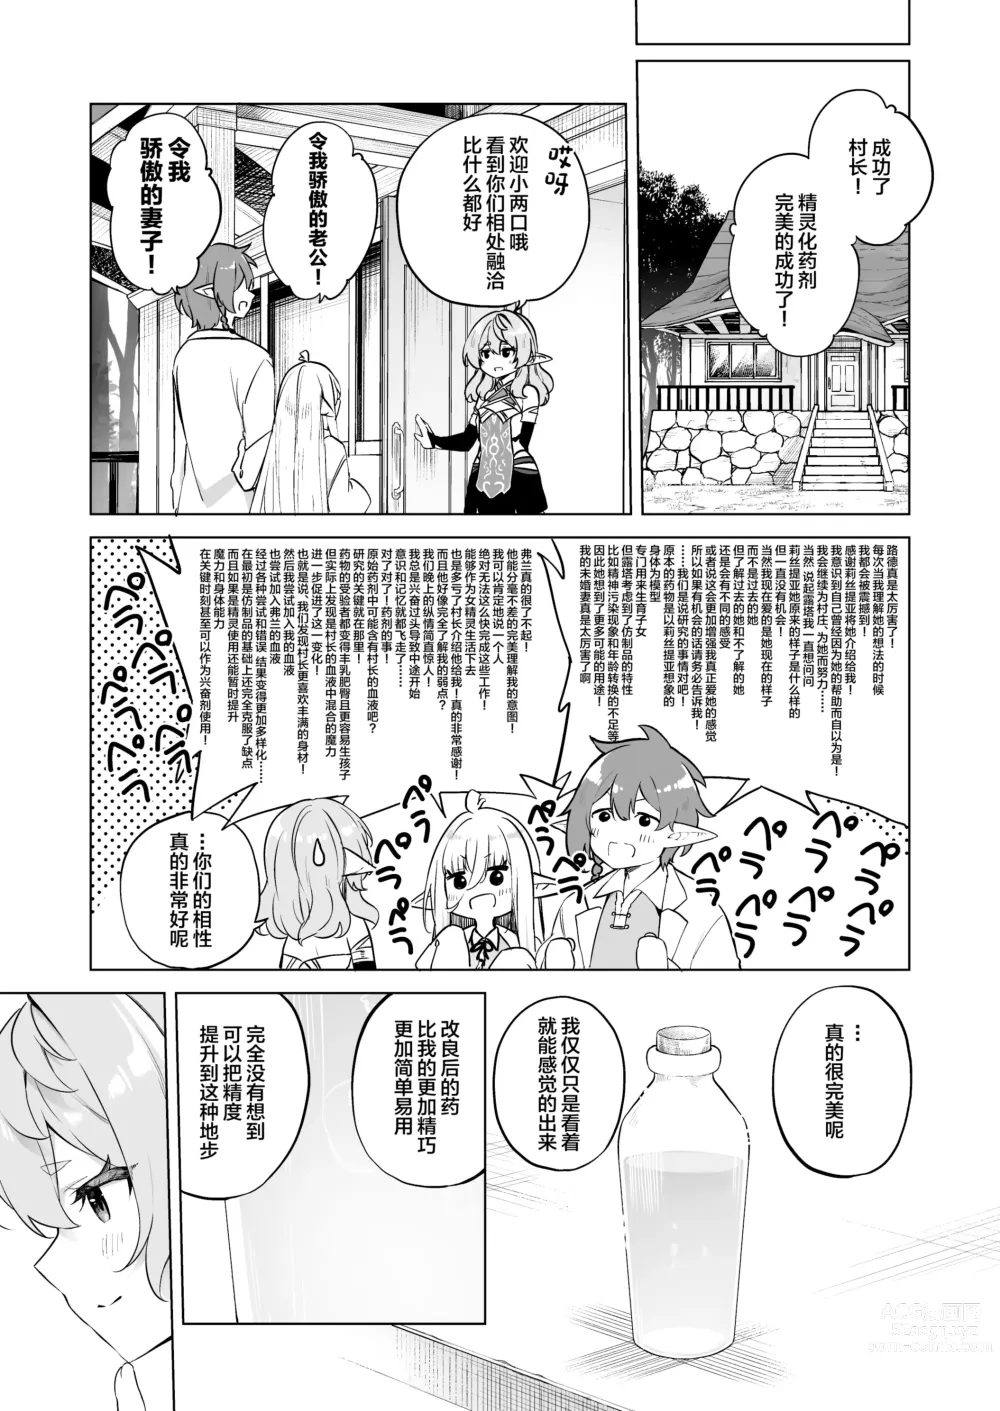 Page 31 of doujinshi TS Elf no Tsukurikata Elf-ka no Kusuri Gaiden